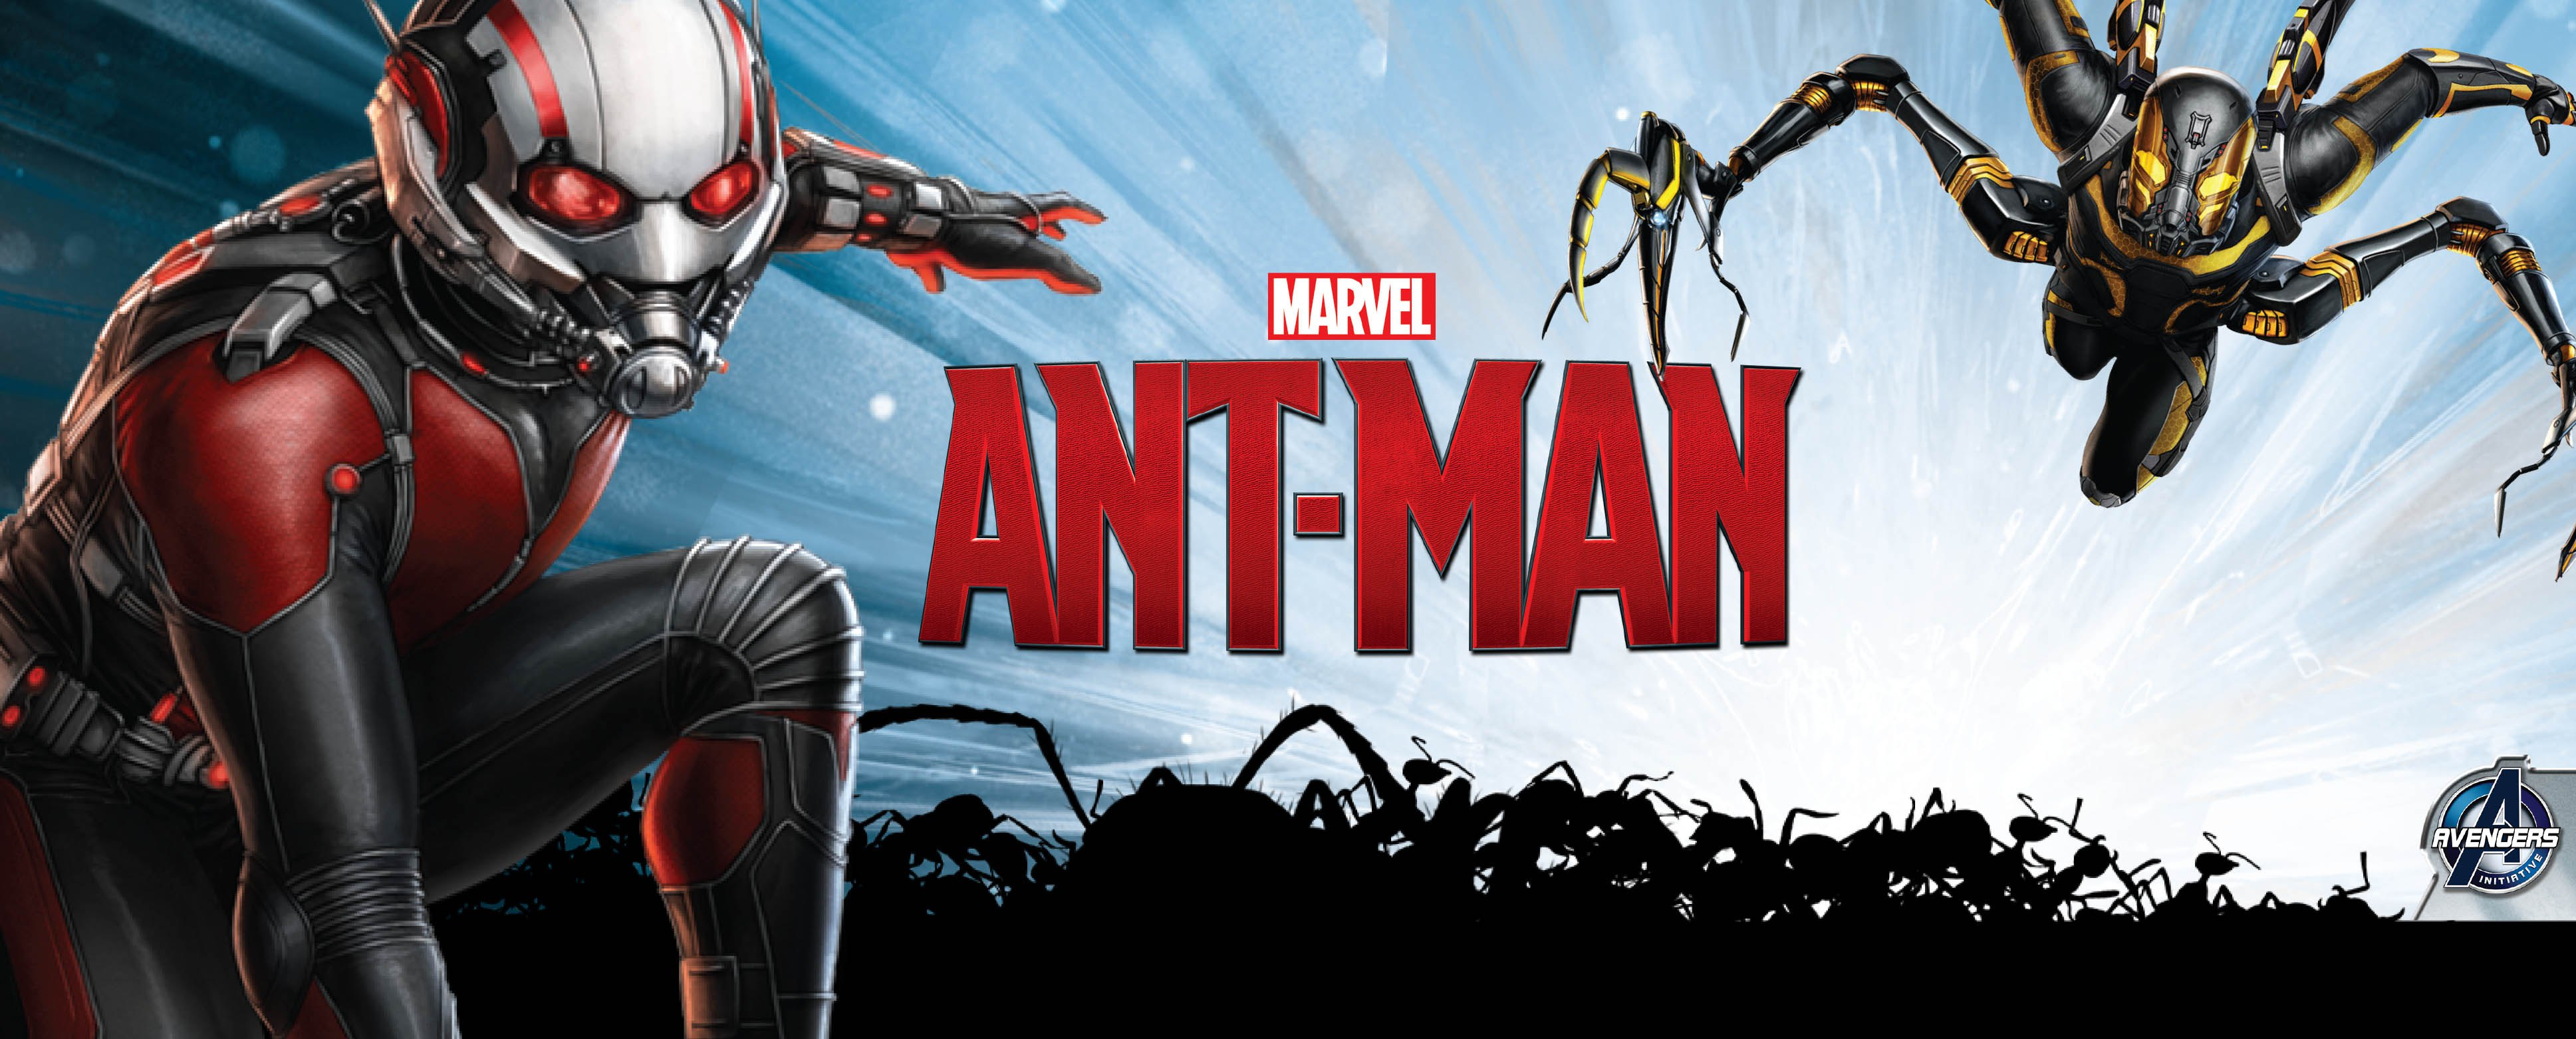 Ant-Man: trailer ufficiale in italiano